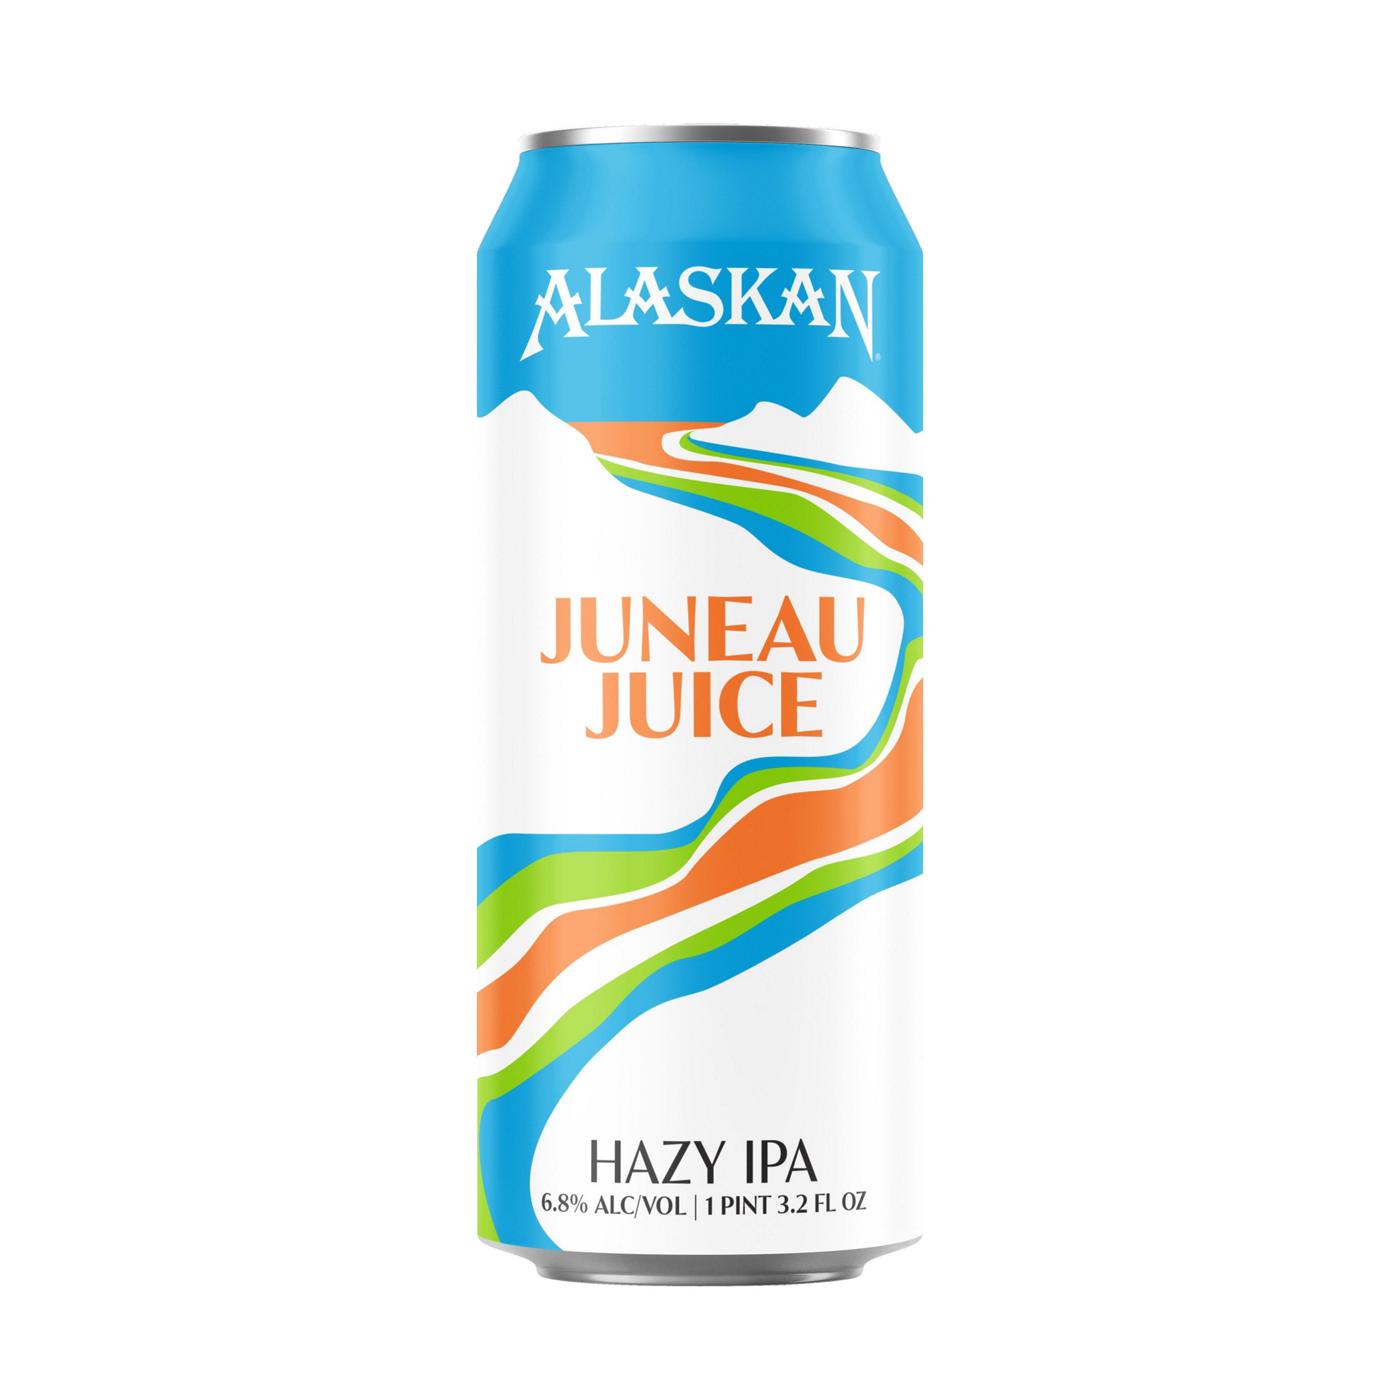 Alaskan Juneau Juice Hazy IPA Beer; image 1 of 2